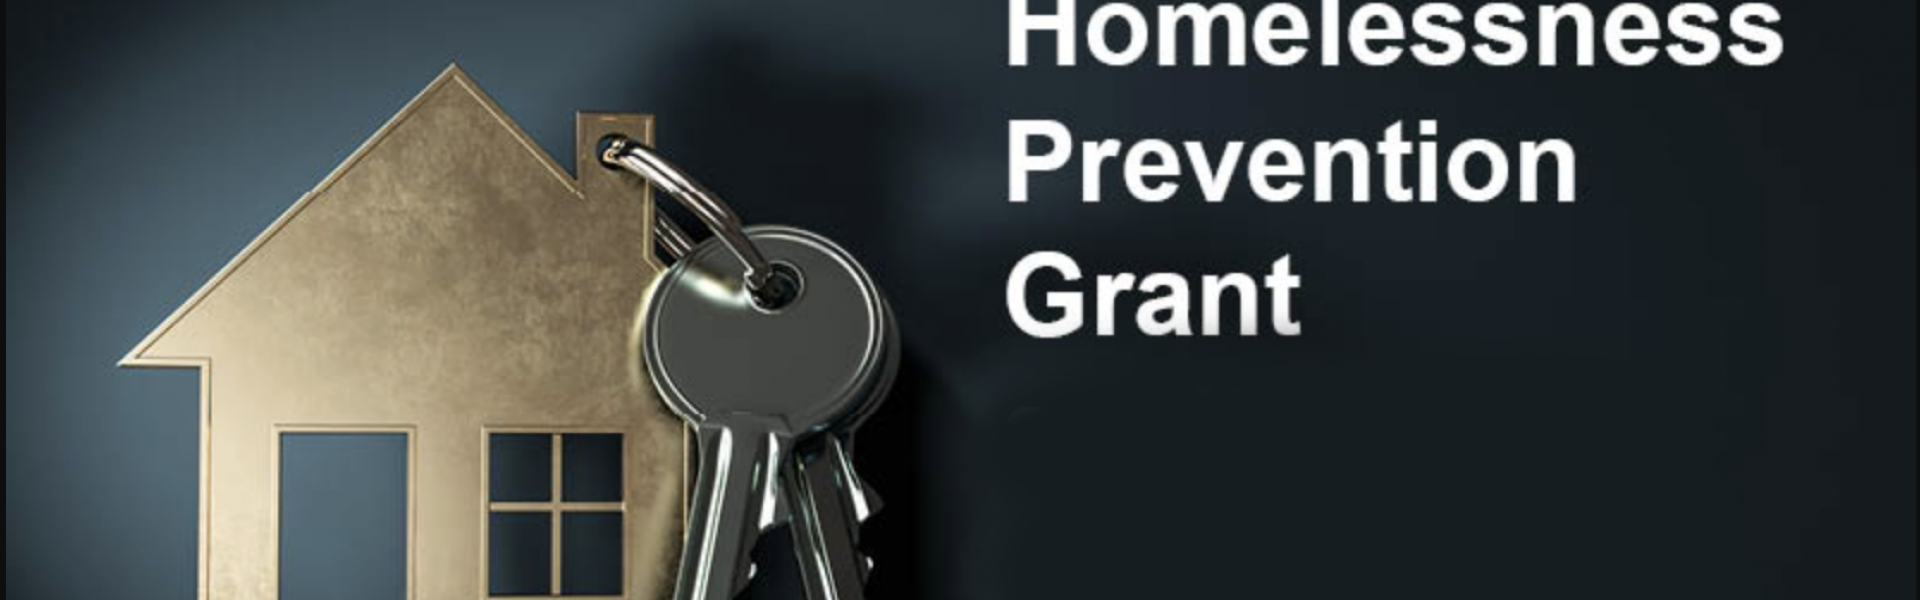 Homelessness Prevention Grant